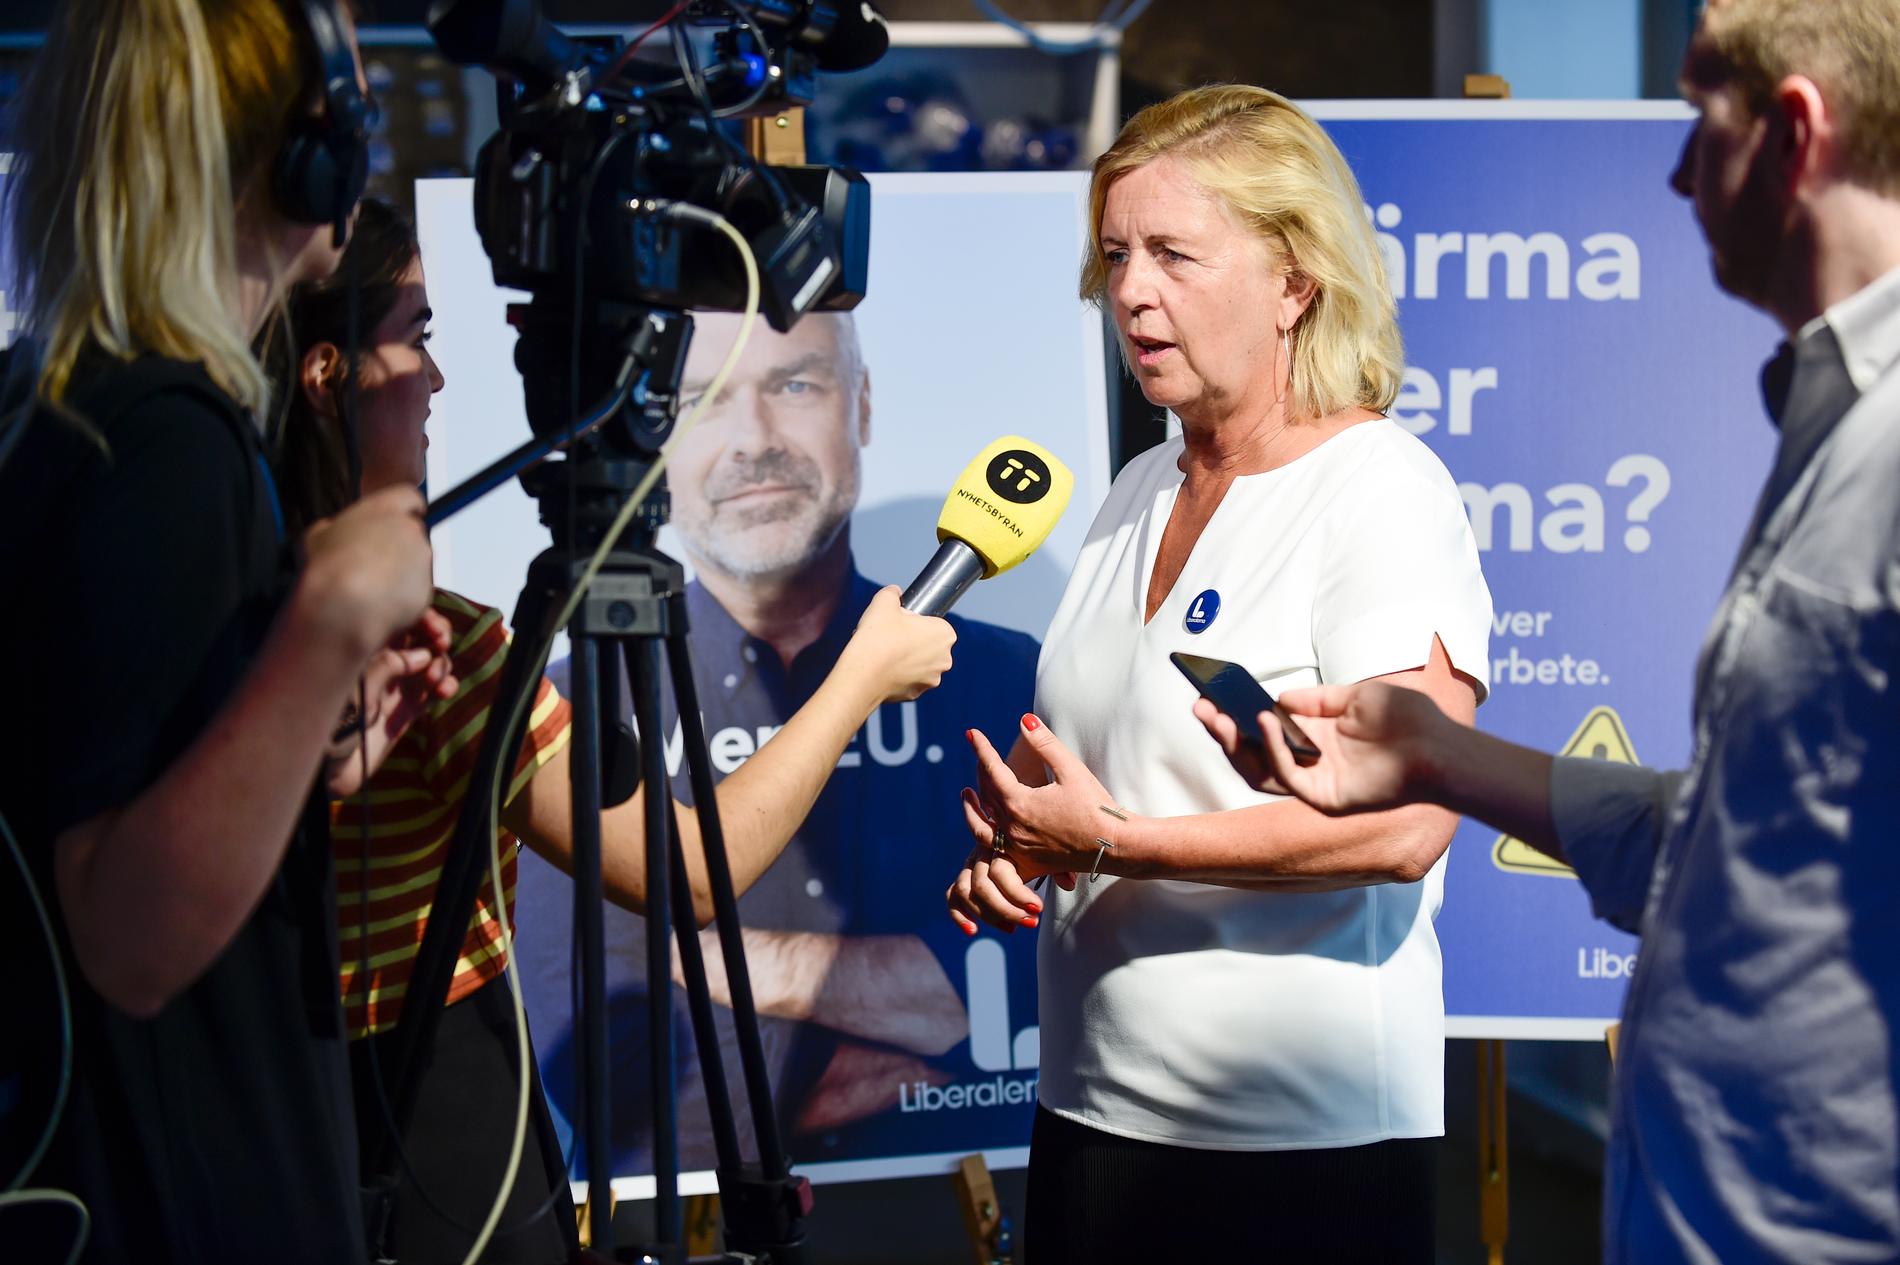 Liberalernas partisekreterare Maria Arnholm presenterar partiets valrörelse.